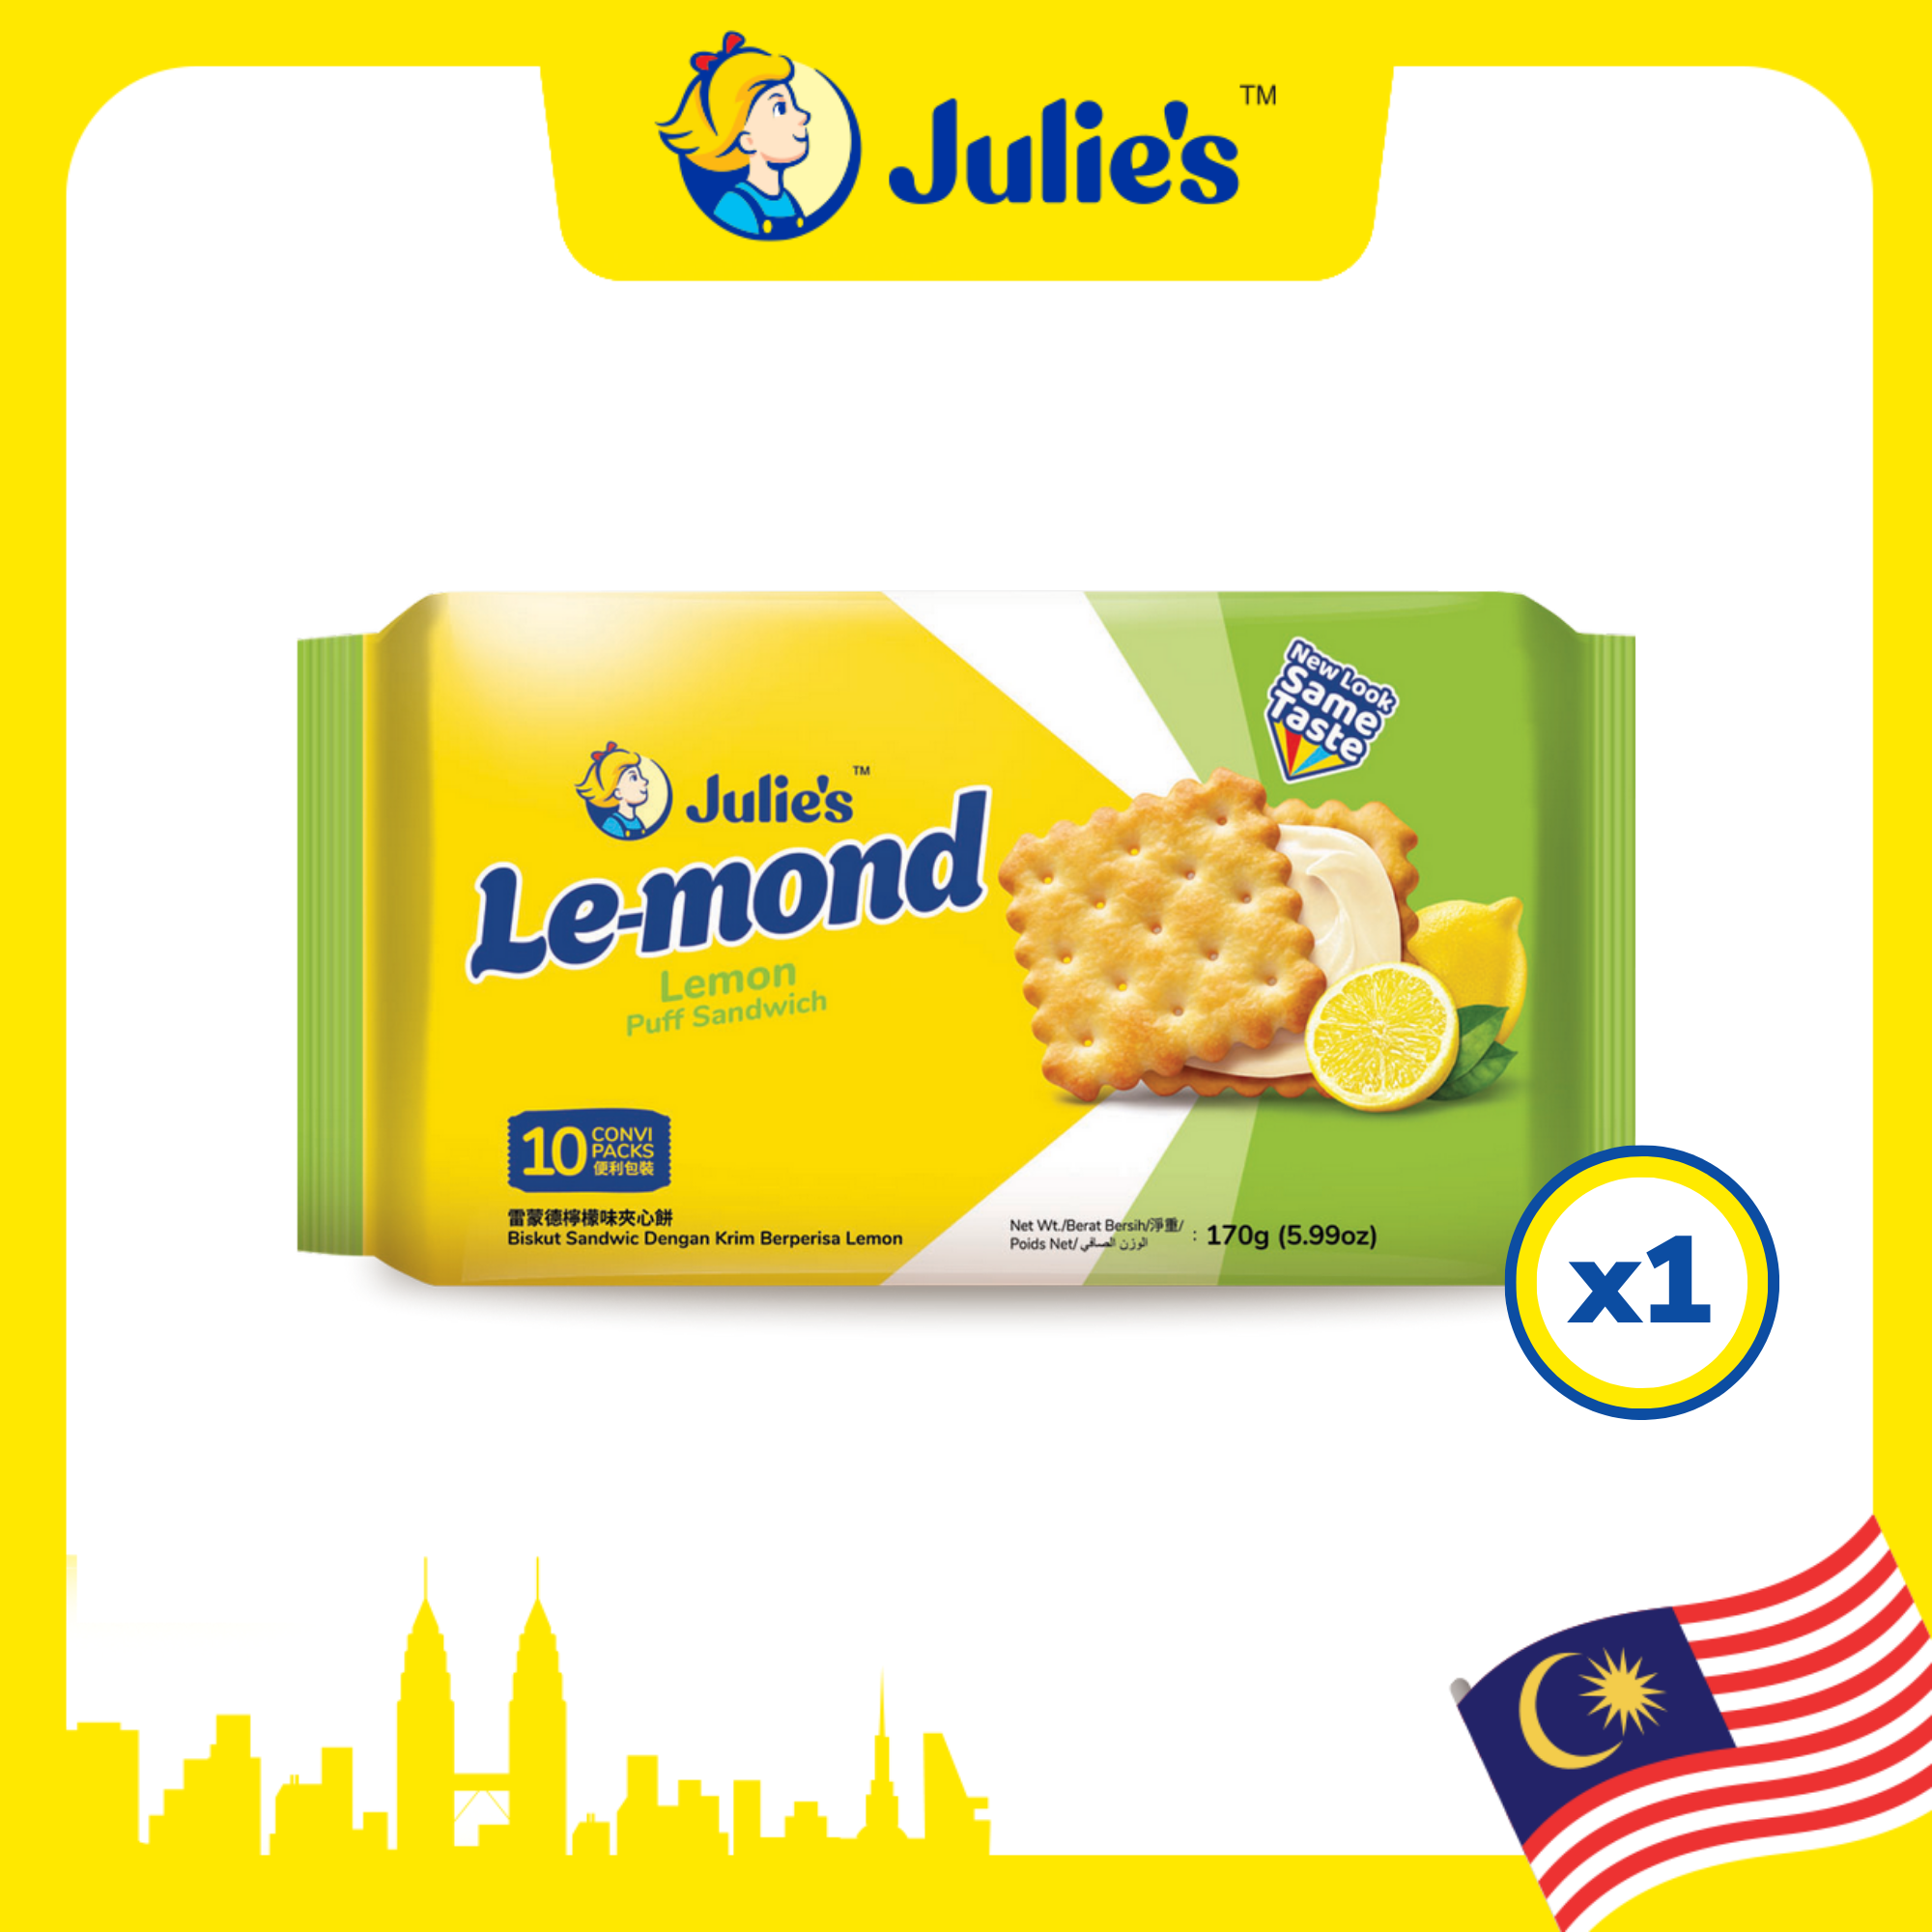 Julie’s Le-mond Lemon Puff Sandwich 170g x 1 pack